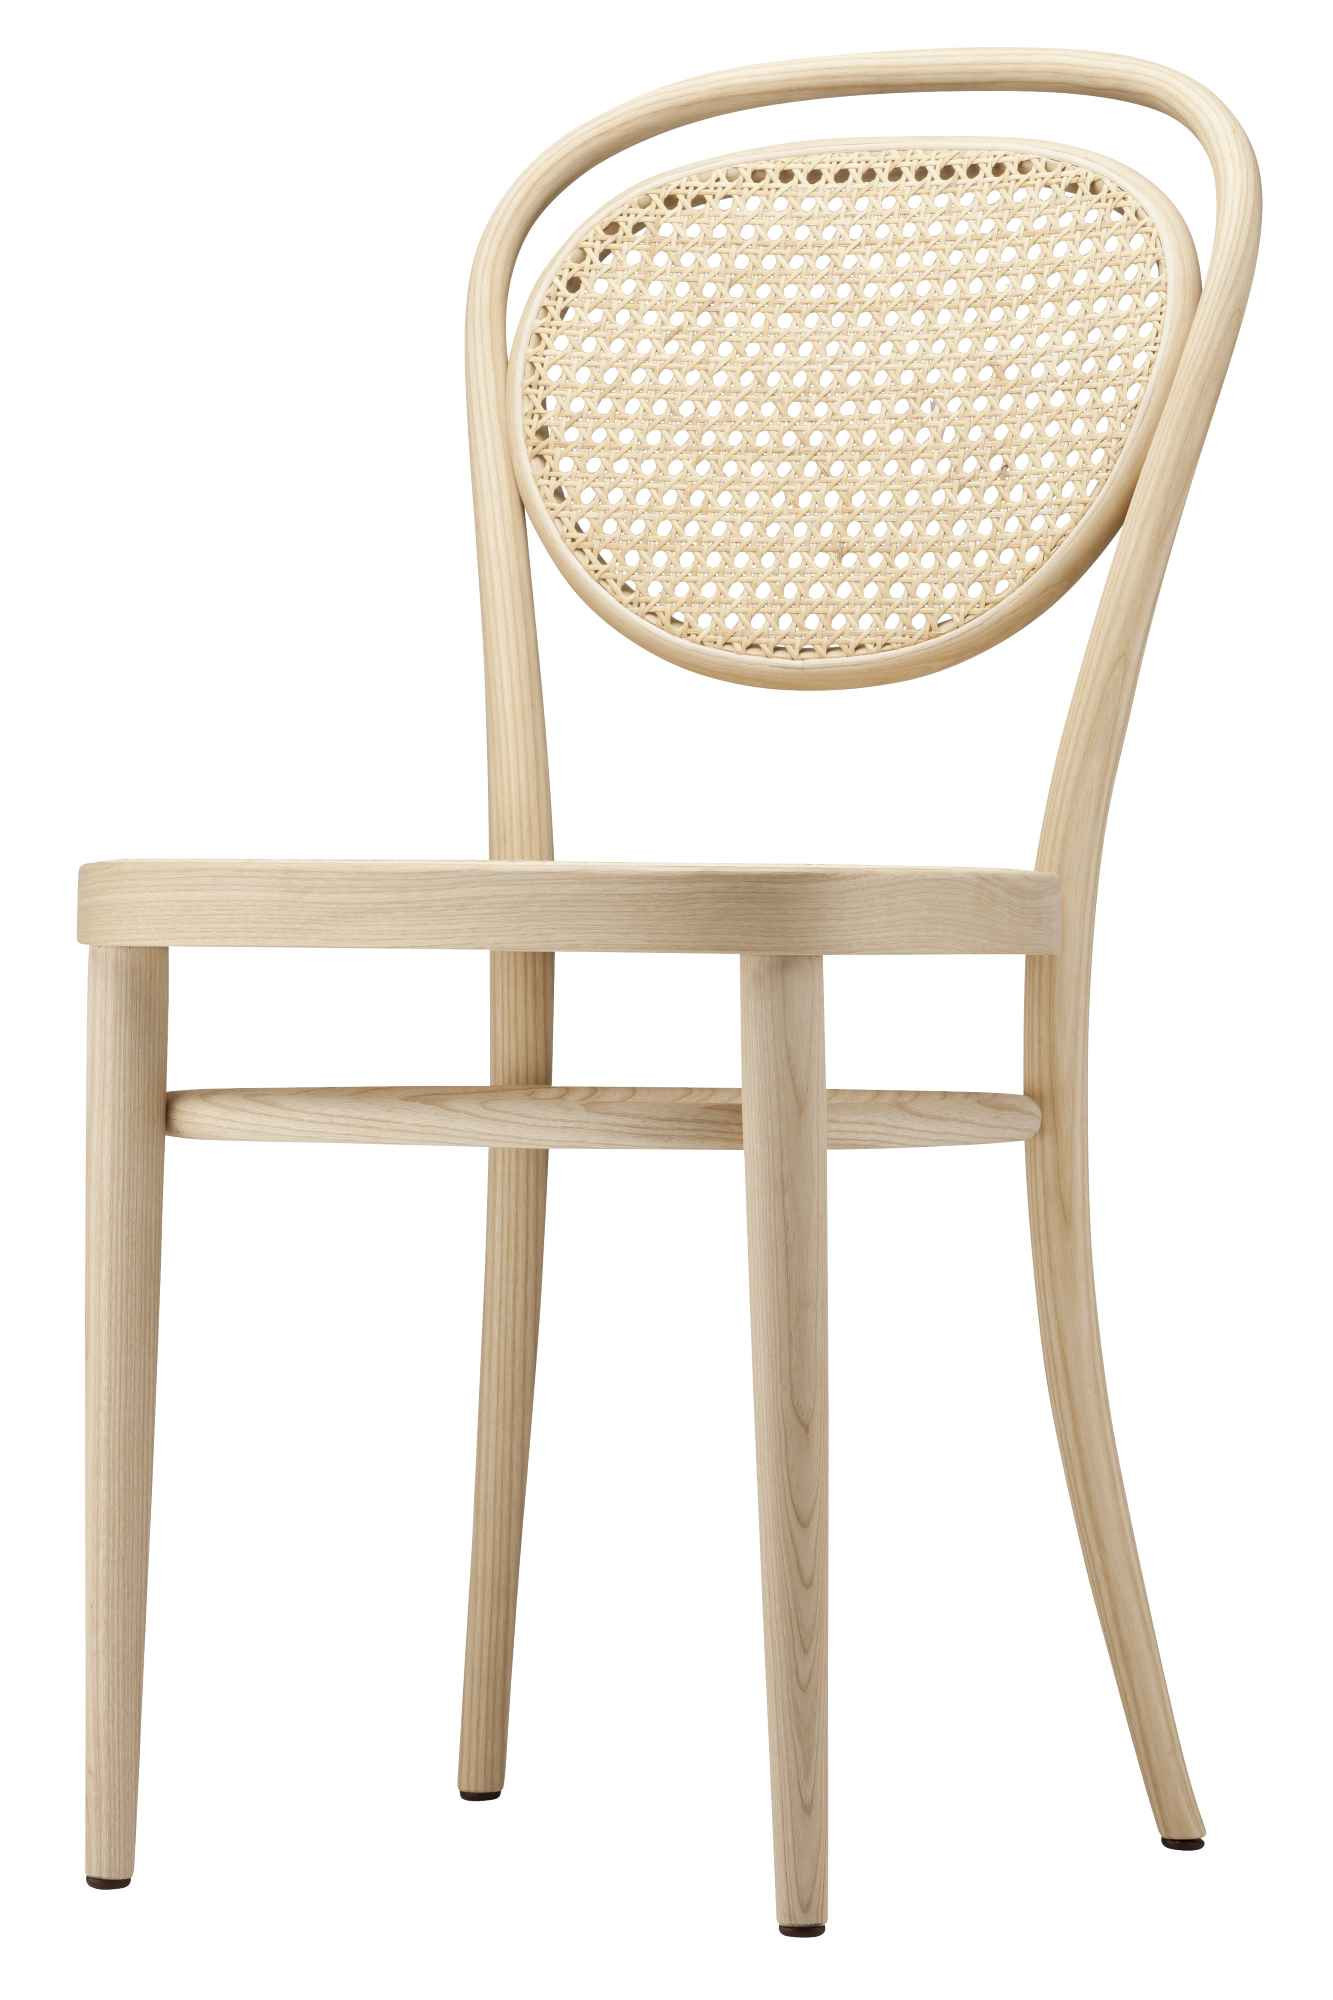 215 R / 215R Bentwodd Chair - Café chair Thonet